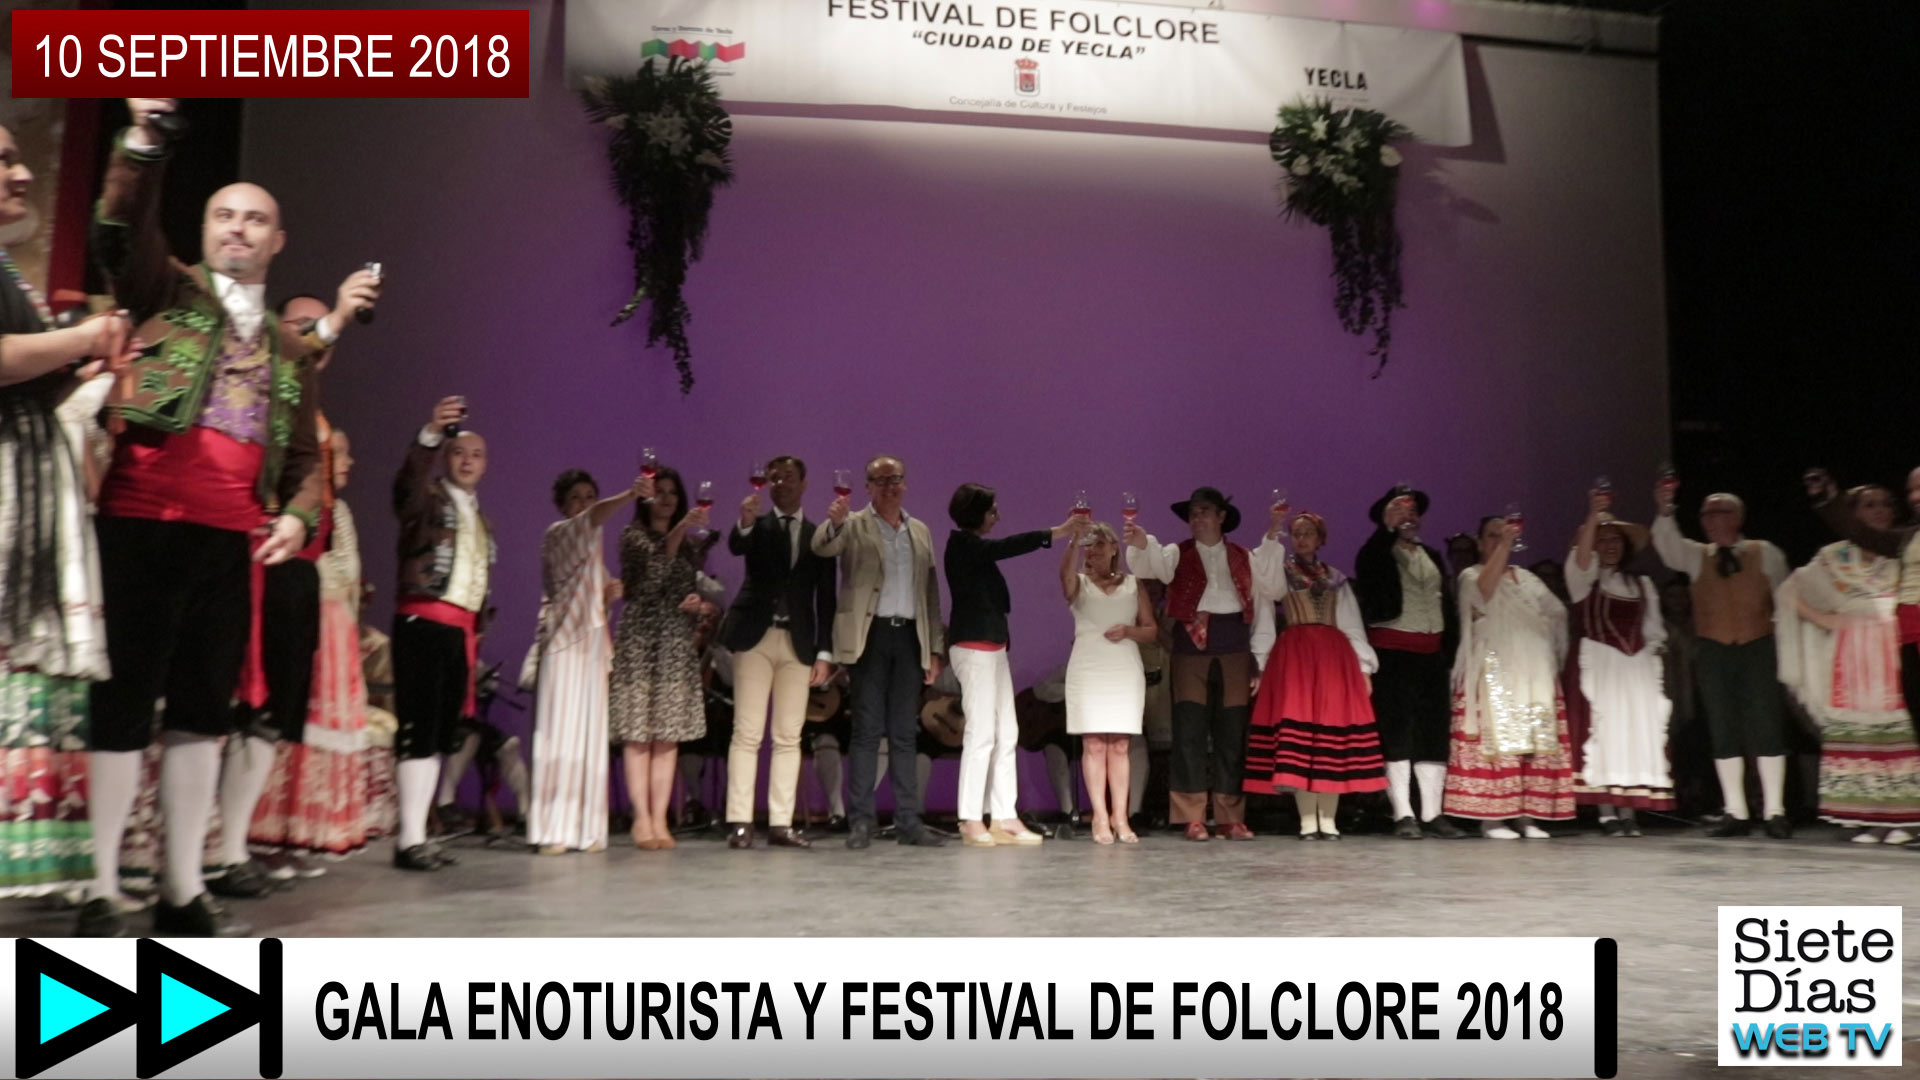 GALA ENOTURISTA Y FESTIVAL DE FOLCLORE 2018 – 10 SEPTIEMBRE 2018